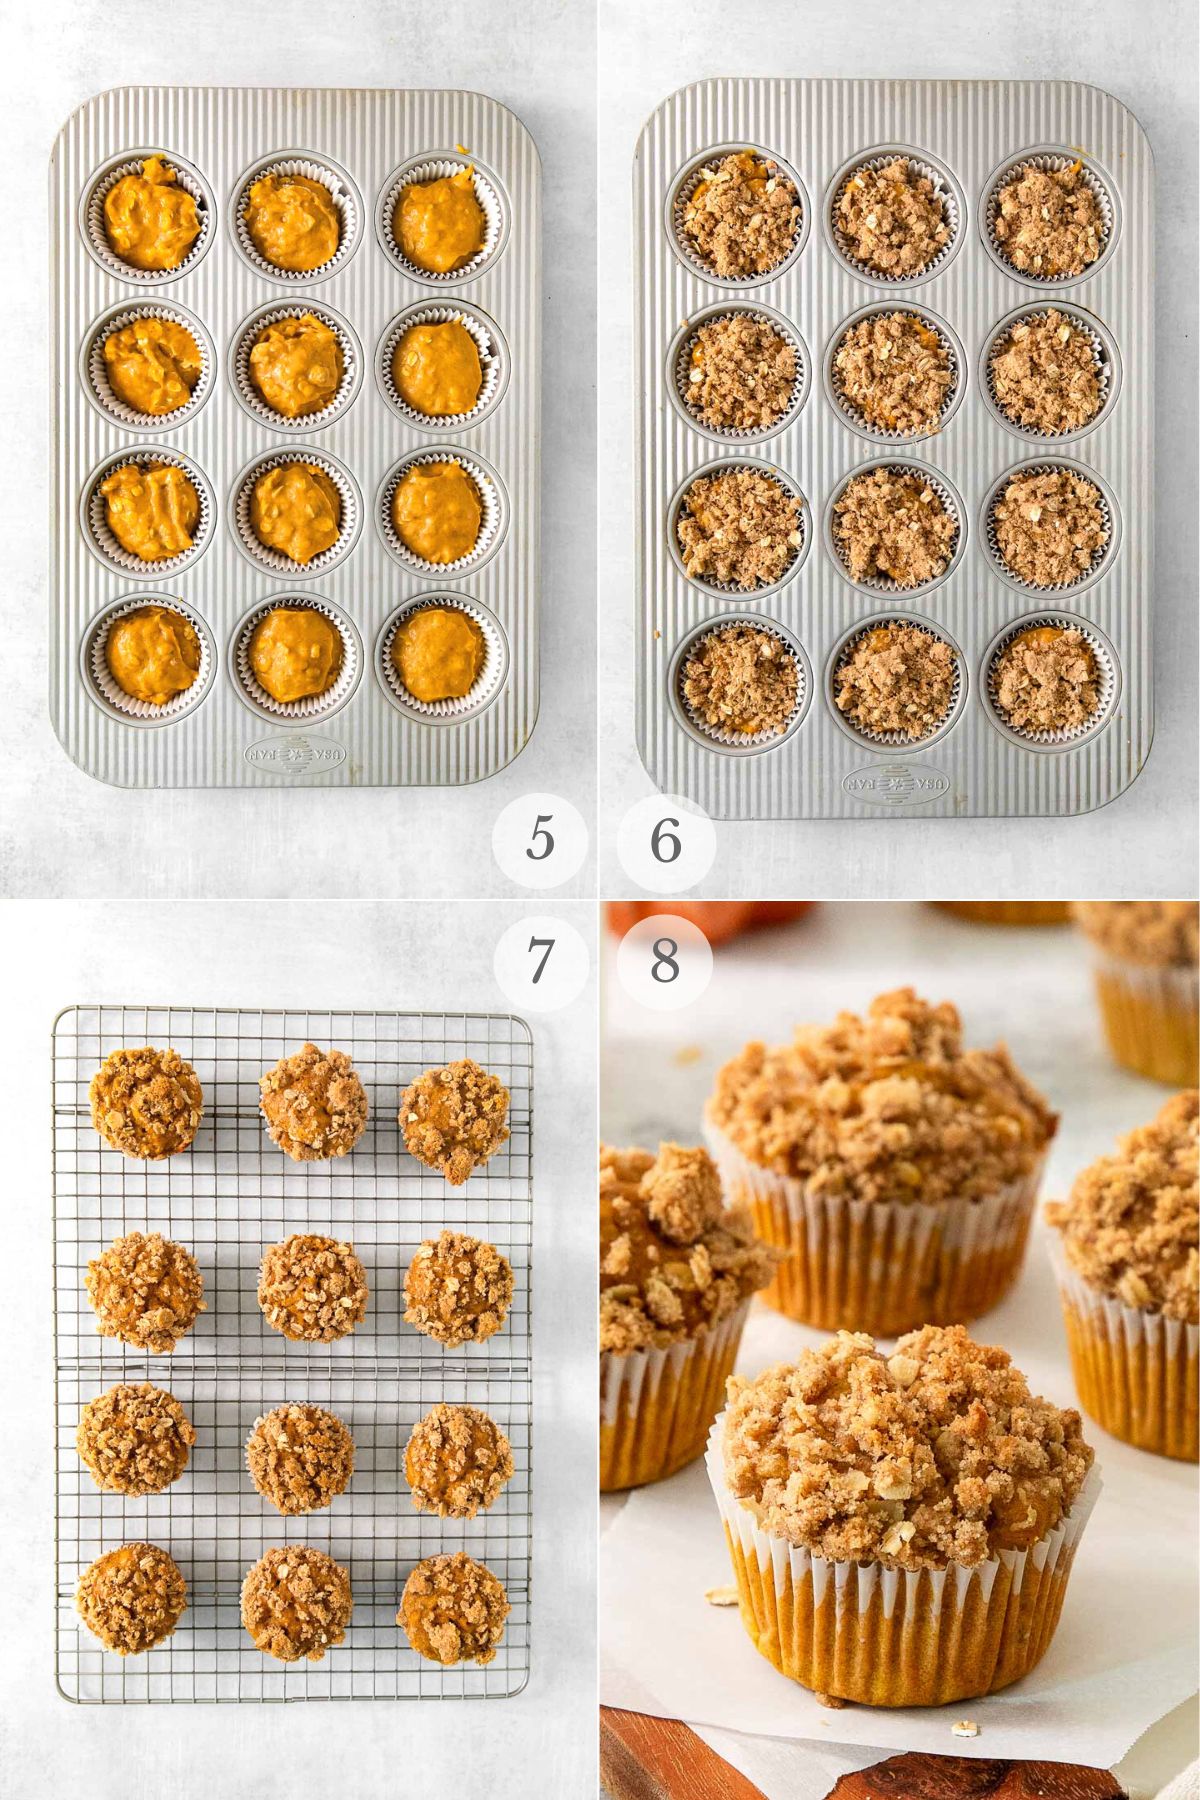 pumpkin oat muffins recipe steps 5-8.